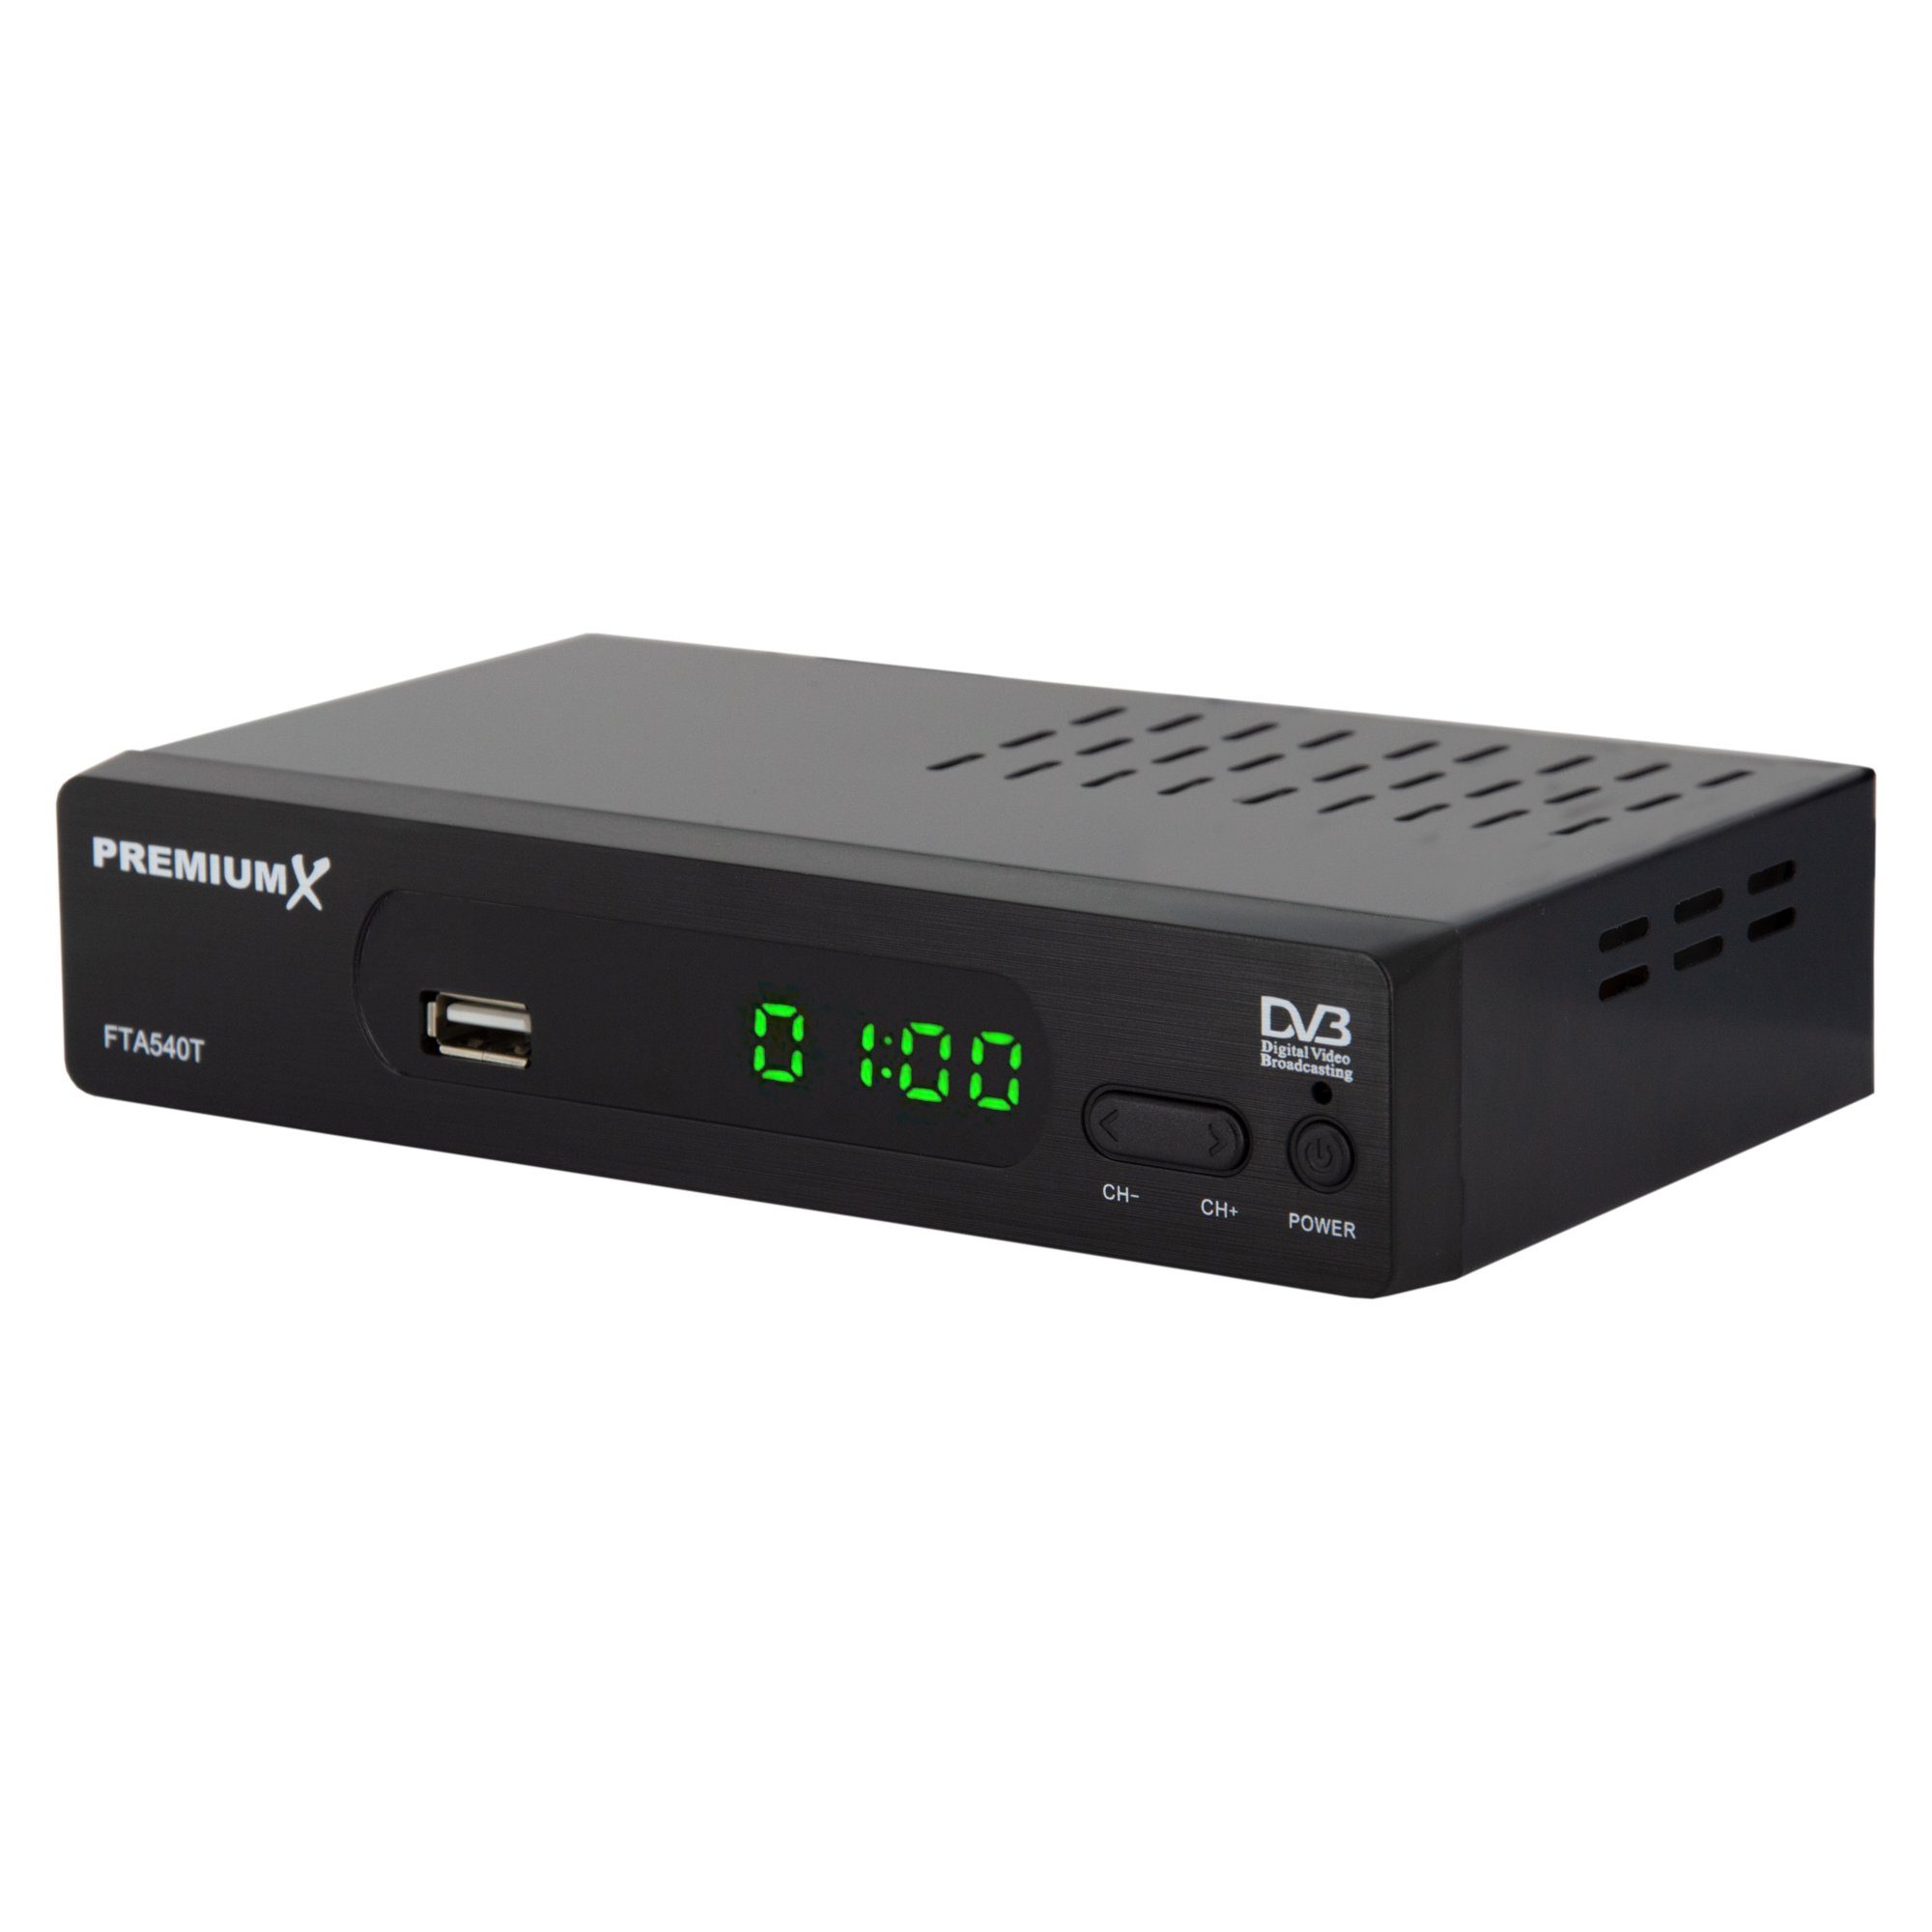 Receiver SCART Digital USB HD 540T Receiver FTA Antennenkabel Full DVB-T2 PremiumX DVB-T2 HD HDMI